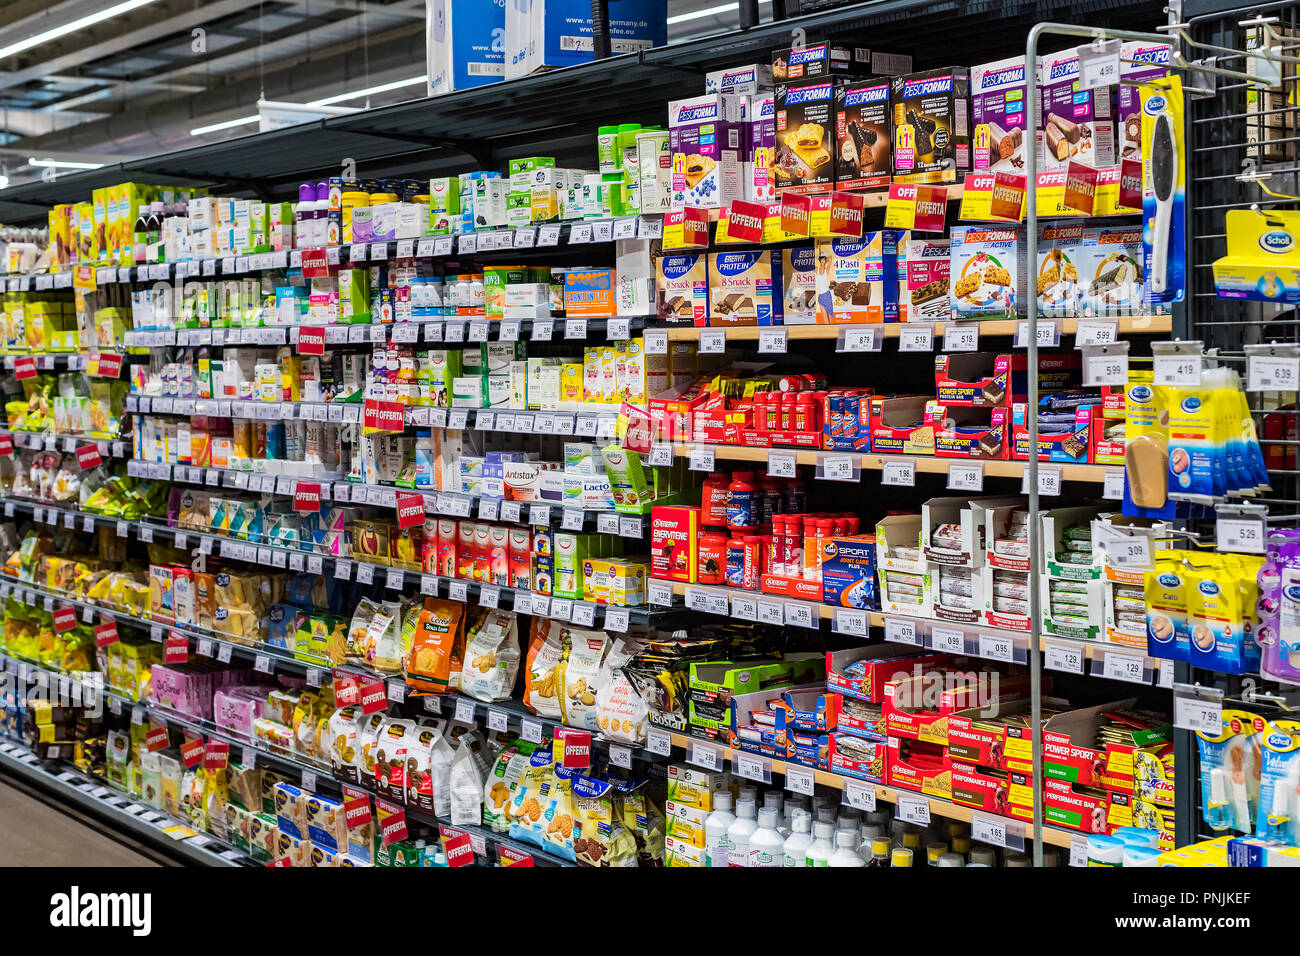 VERONA, Italien - 4 September: Regale und Regalsysteme mit Produkten von  Getränken und Waren im Supermarkt SPAR Stockfotografie - Alamy